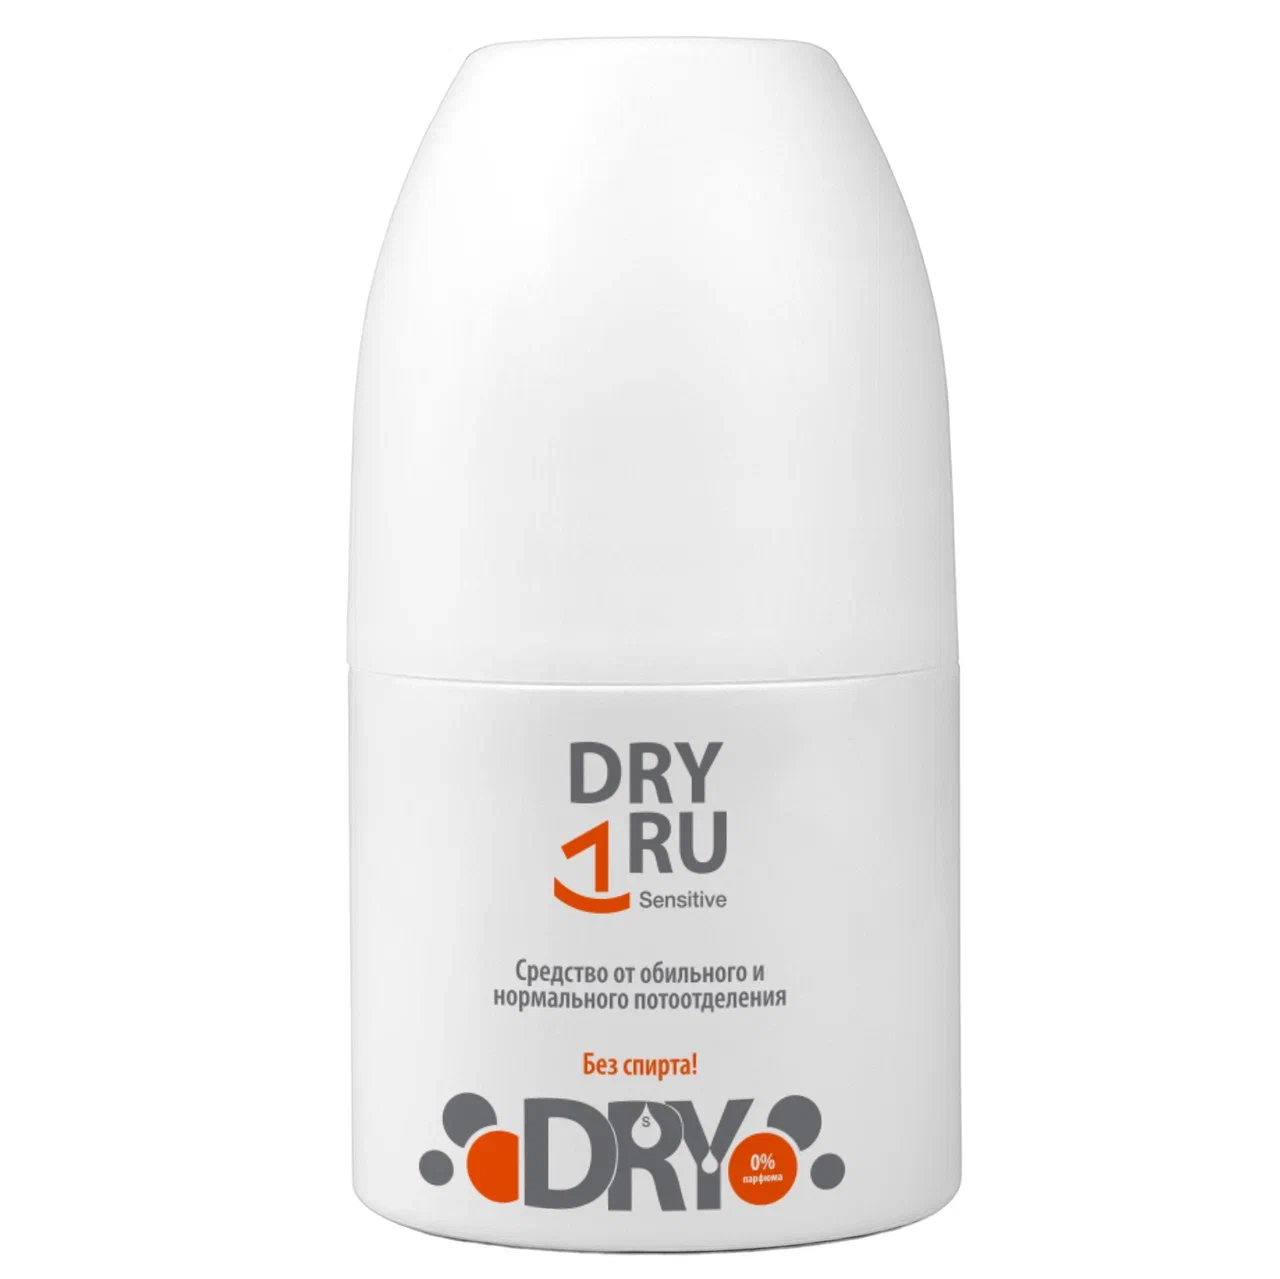 Дезодорант-антиперспирант DRY RU Sensitive шариковый, от пота и запаха 50 мл gehwol дезодорант для ног sensitive 150 мл